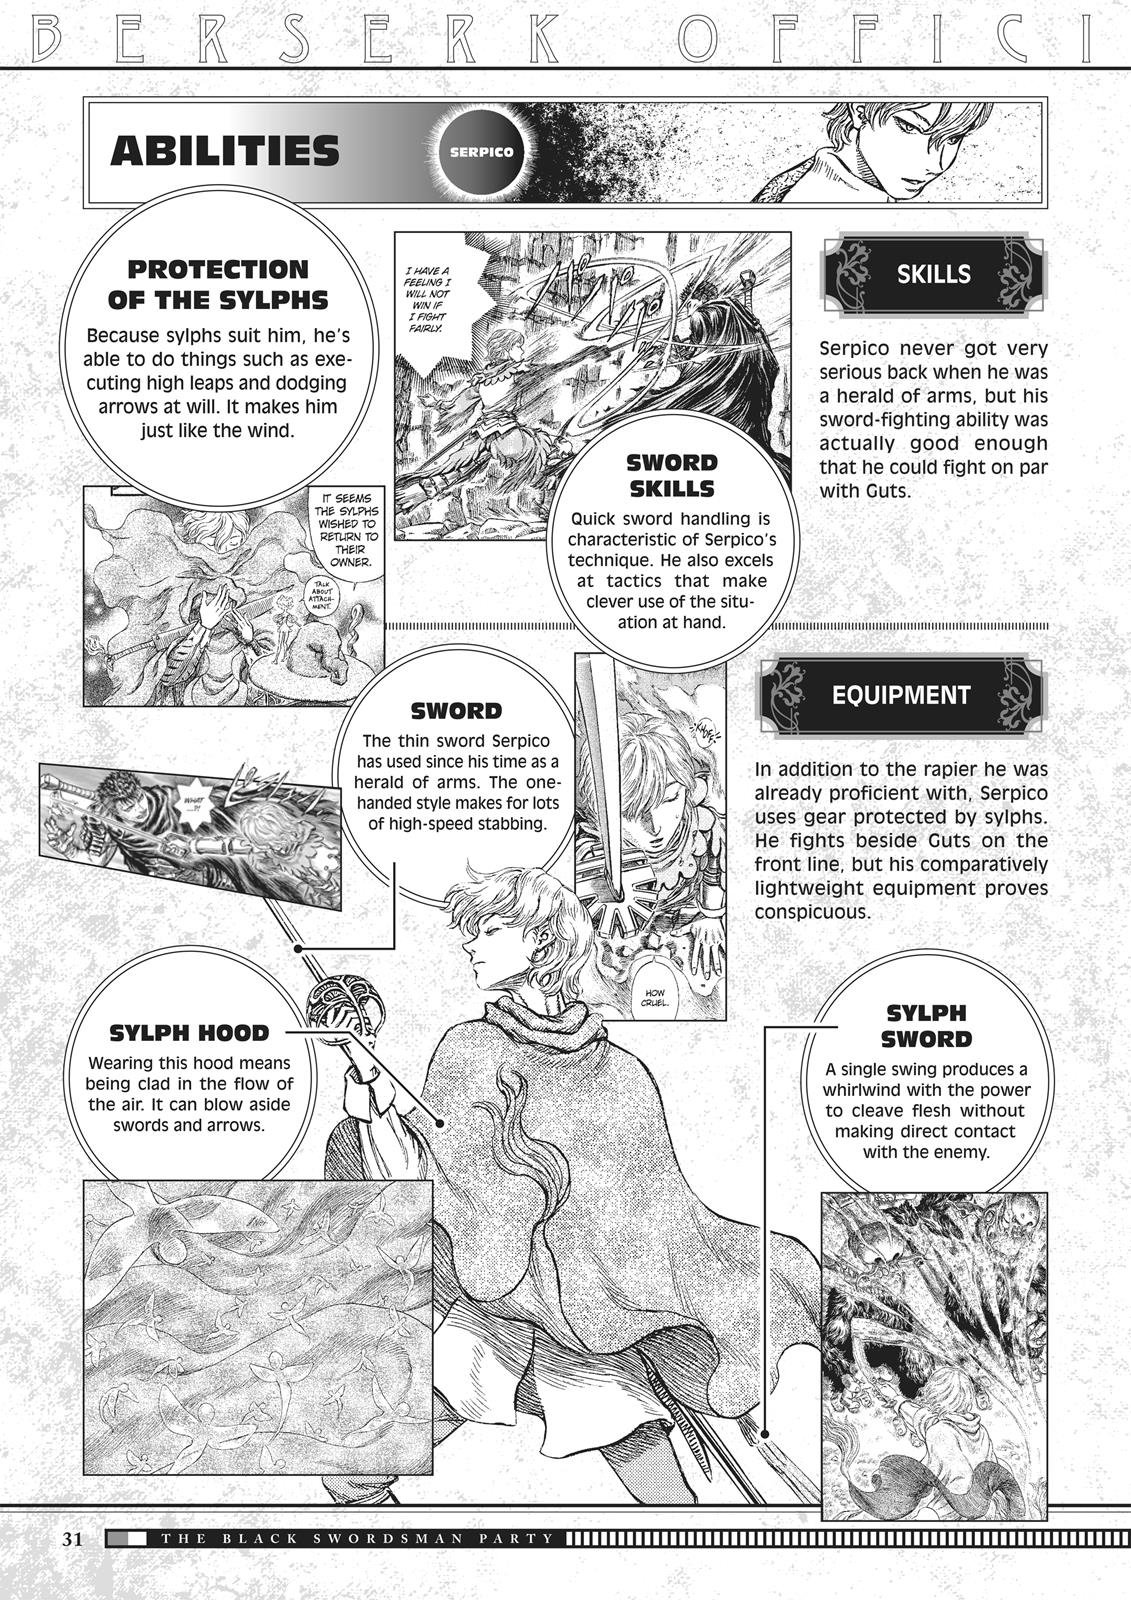 Berserk Manga Chapter 350.5 image 031